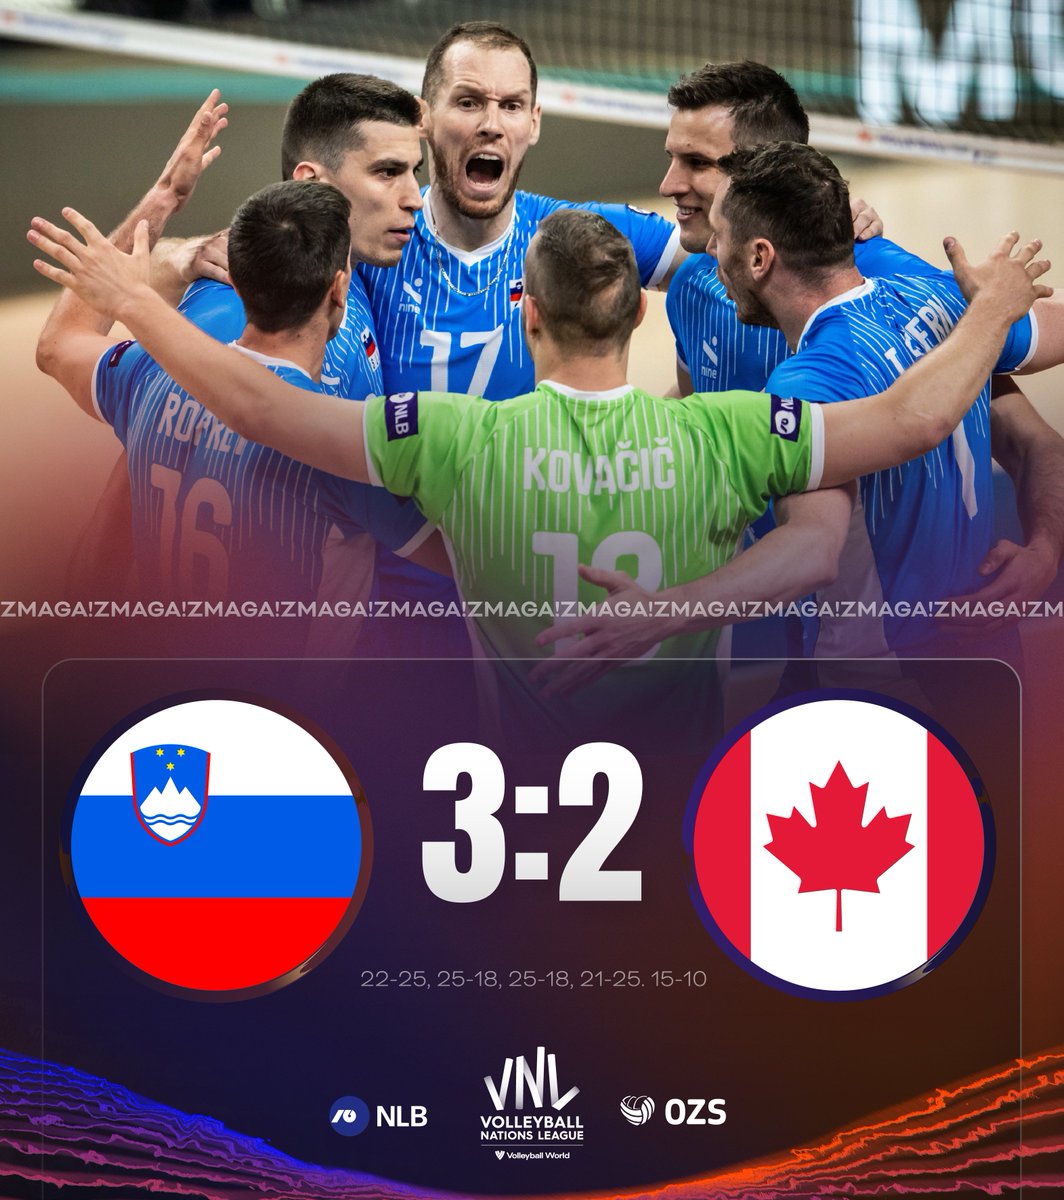 🇸🇮💪🏐 ZMAGA! Slovenska reprezentanca je s 3:2 premagala Kanado in se veseli že tretje zmage na turnirju VNL v Turčiji. Bravo, fantje!

@TelekomSlo #NLB